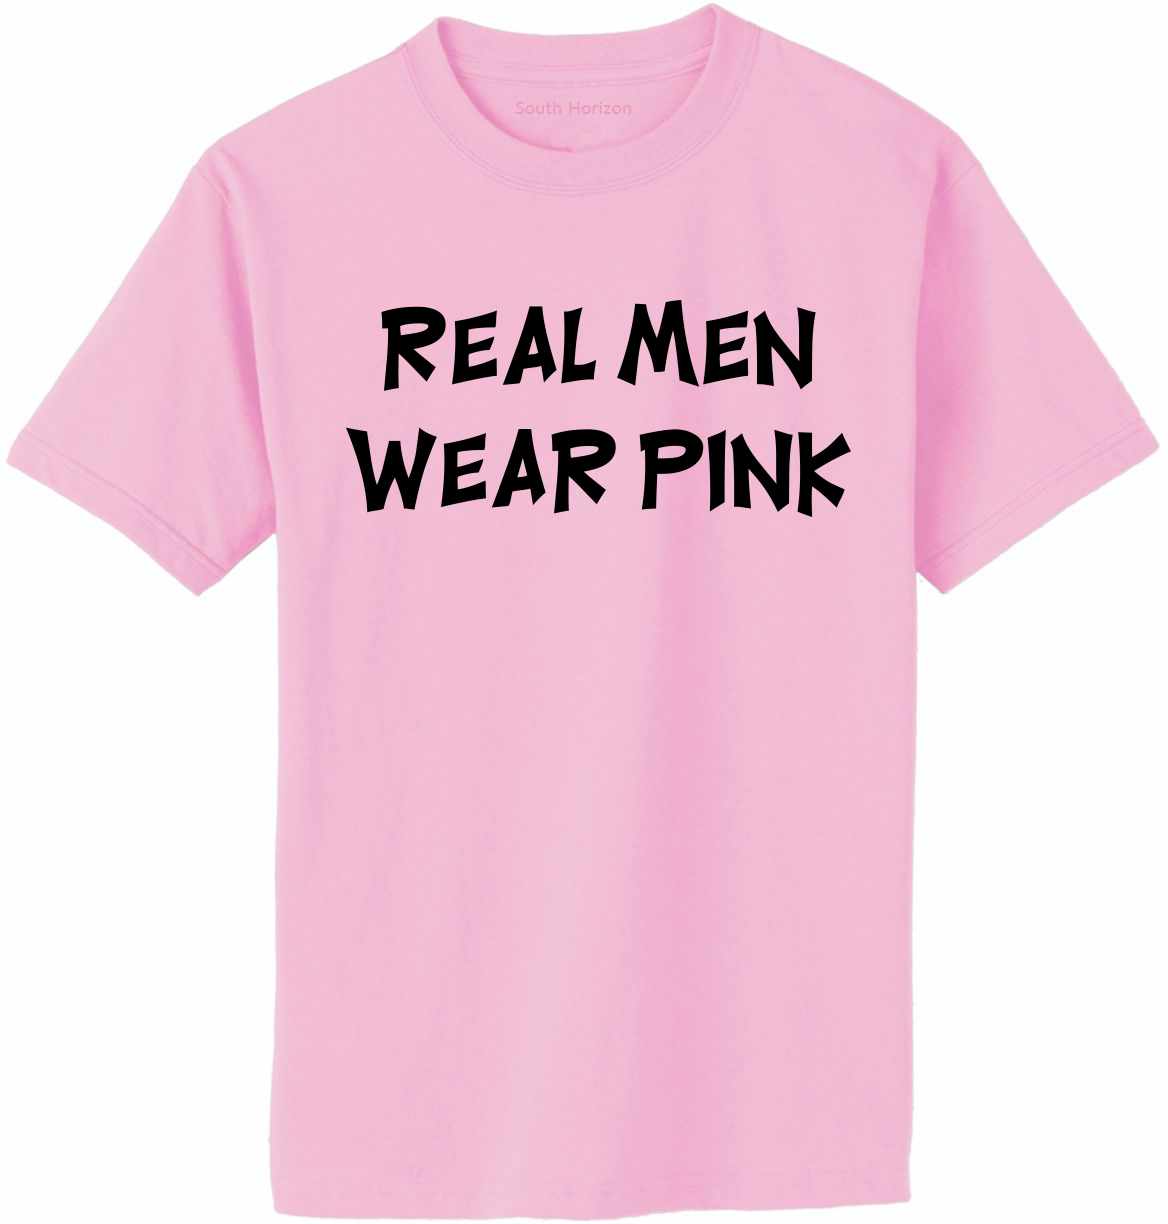 Only Tough Men Wear Pink T-Shirt